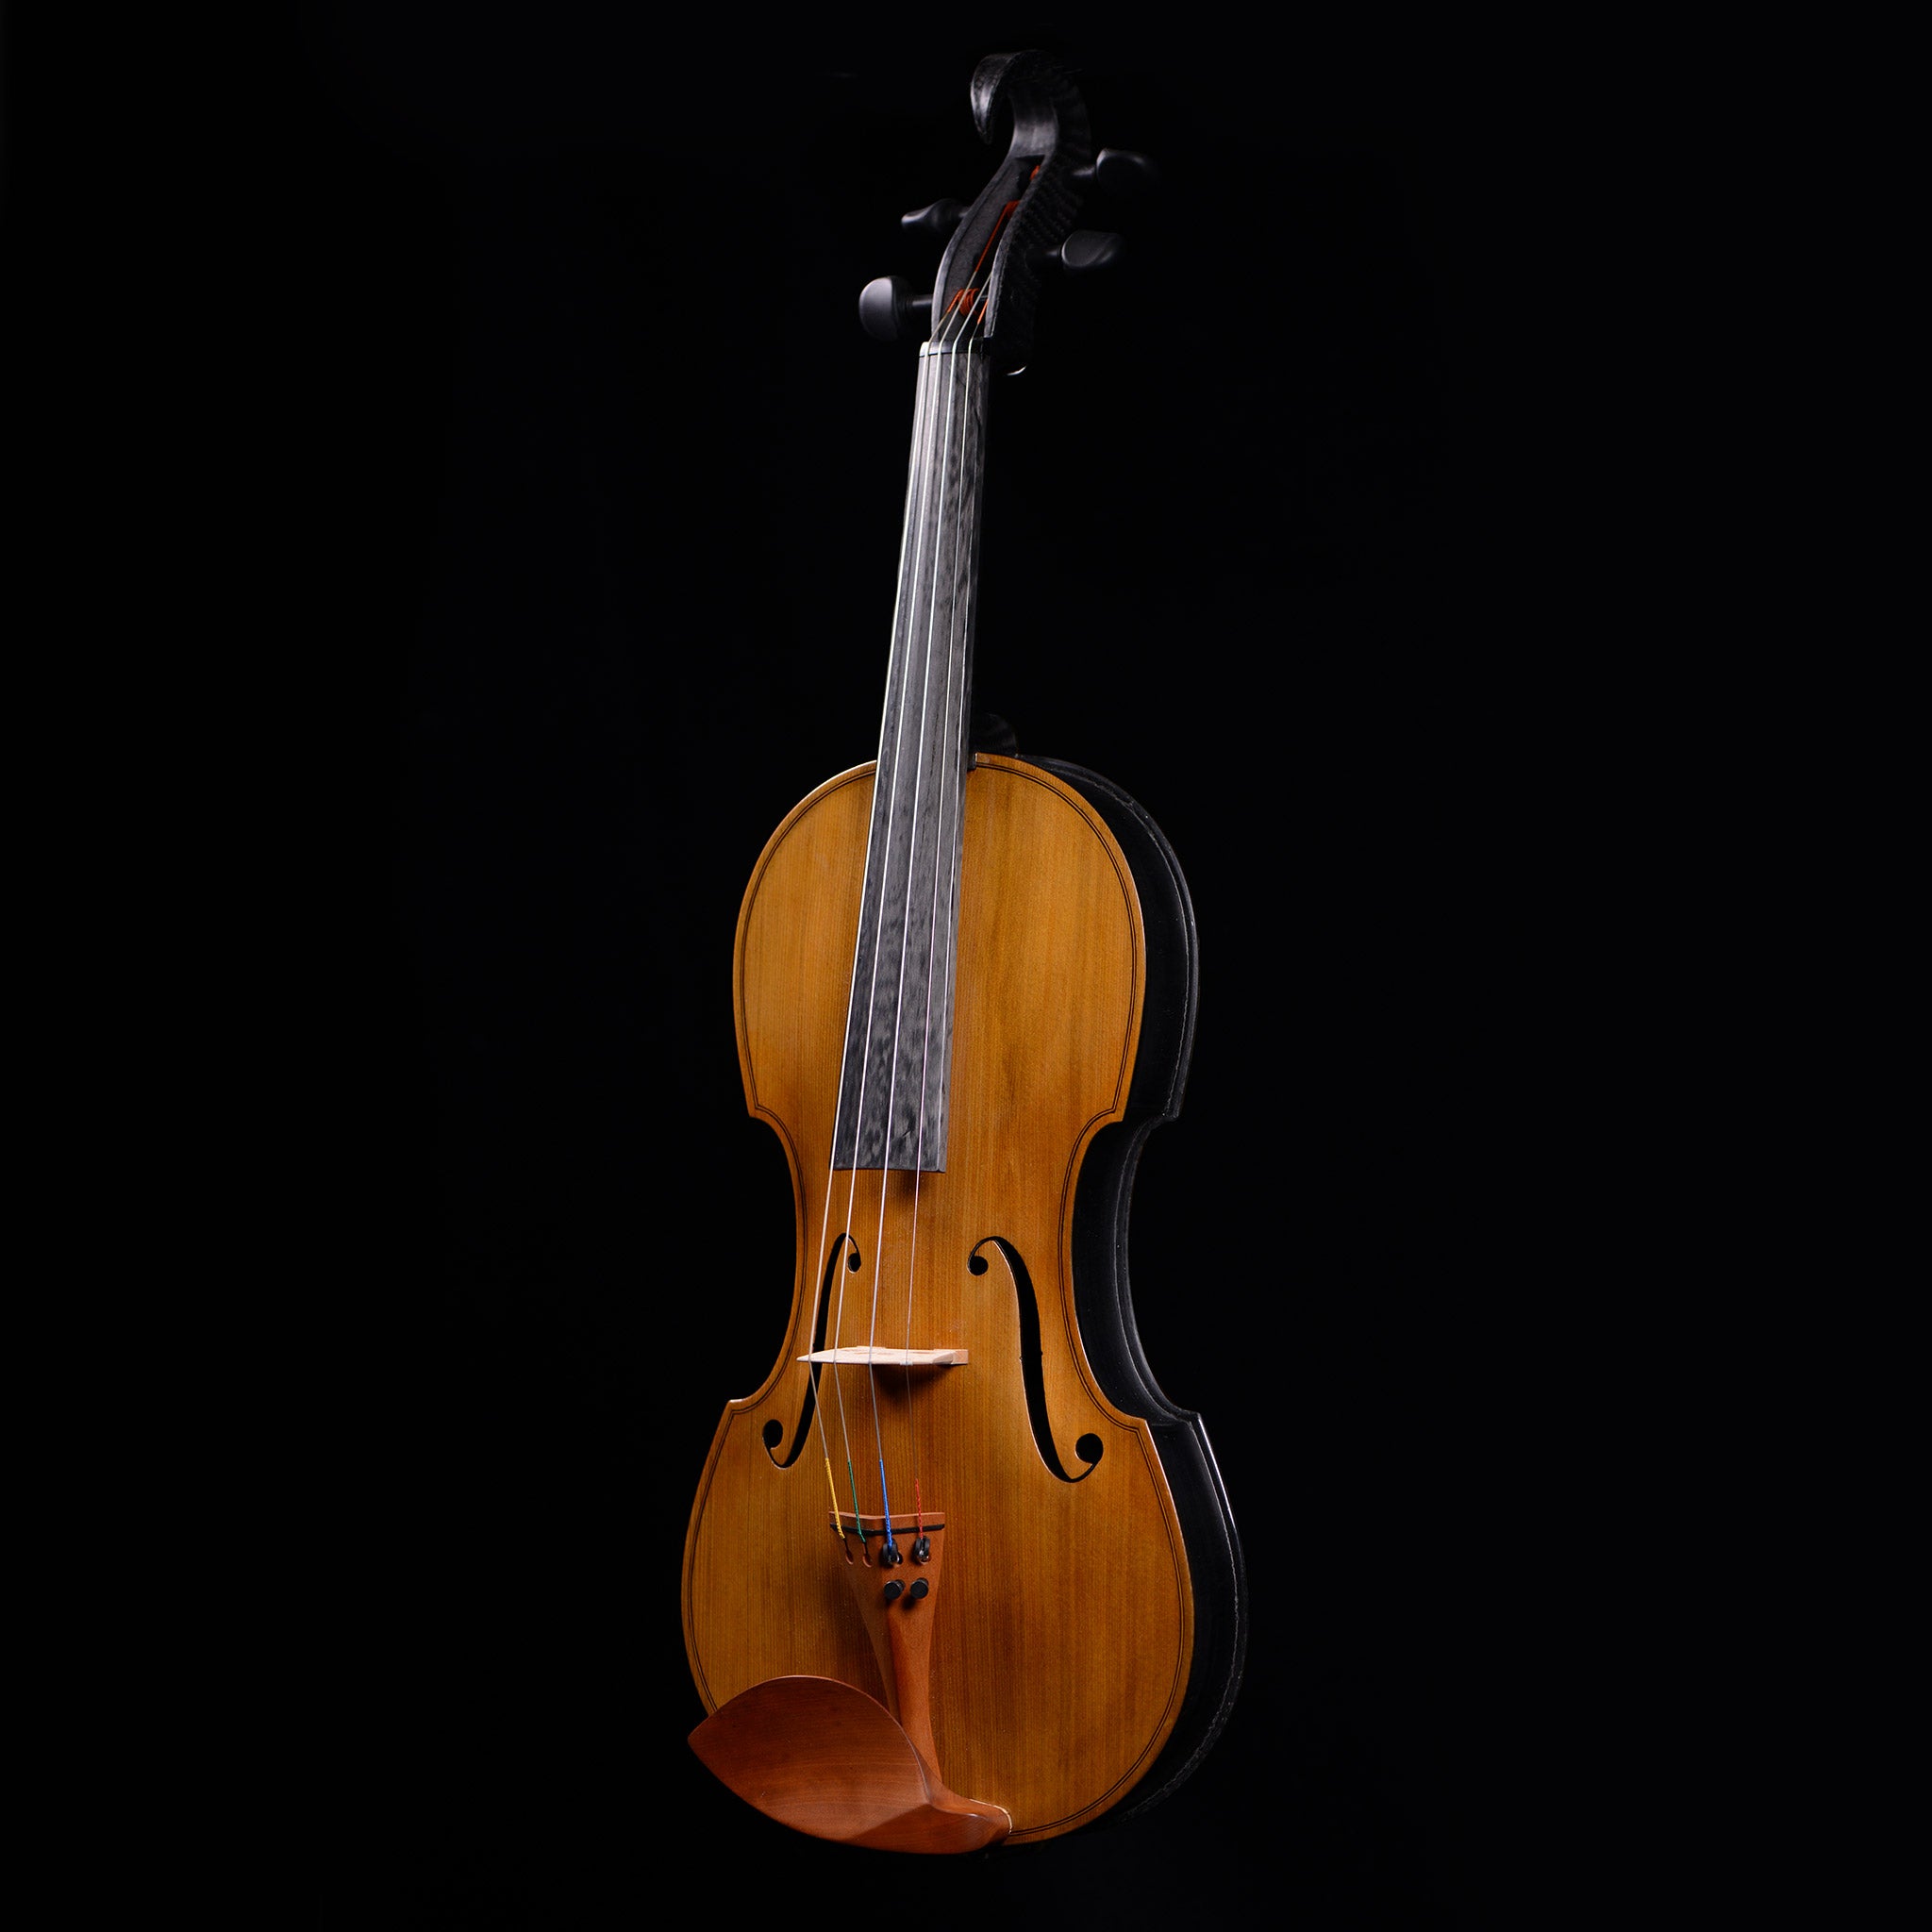 Carbon-Klang Elena Carbon Fiber Hybrid Violin